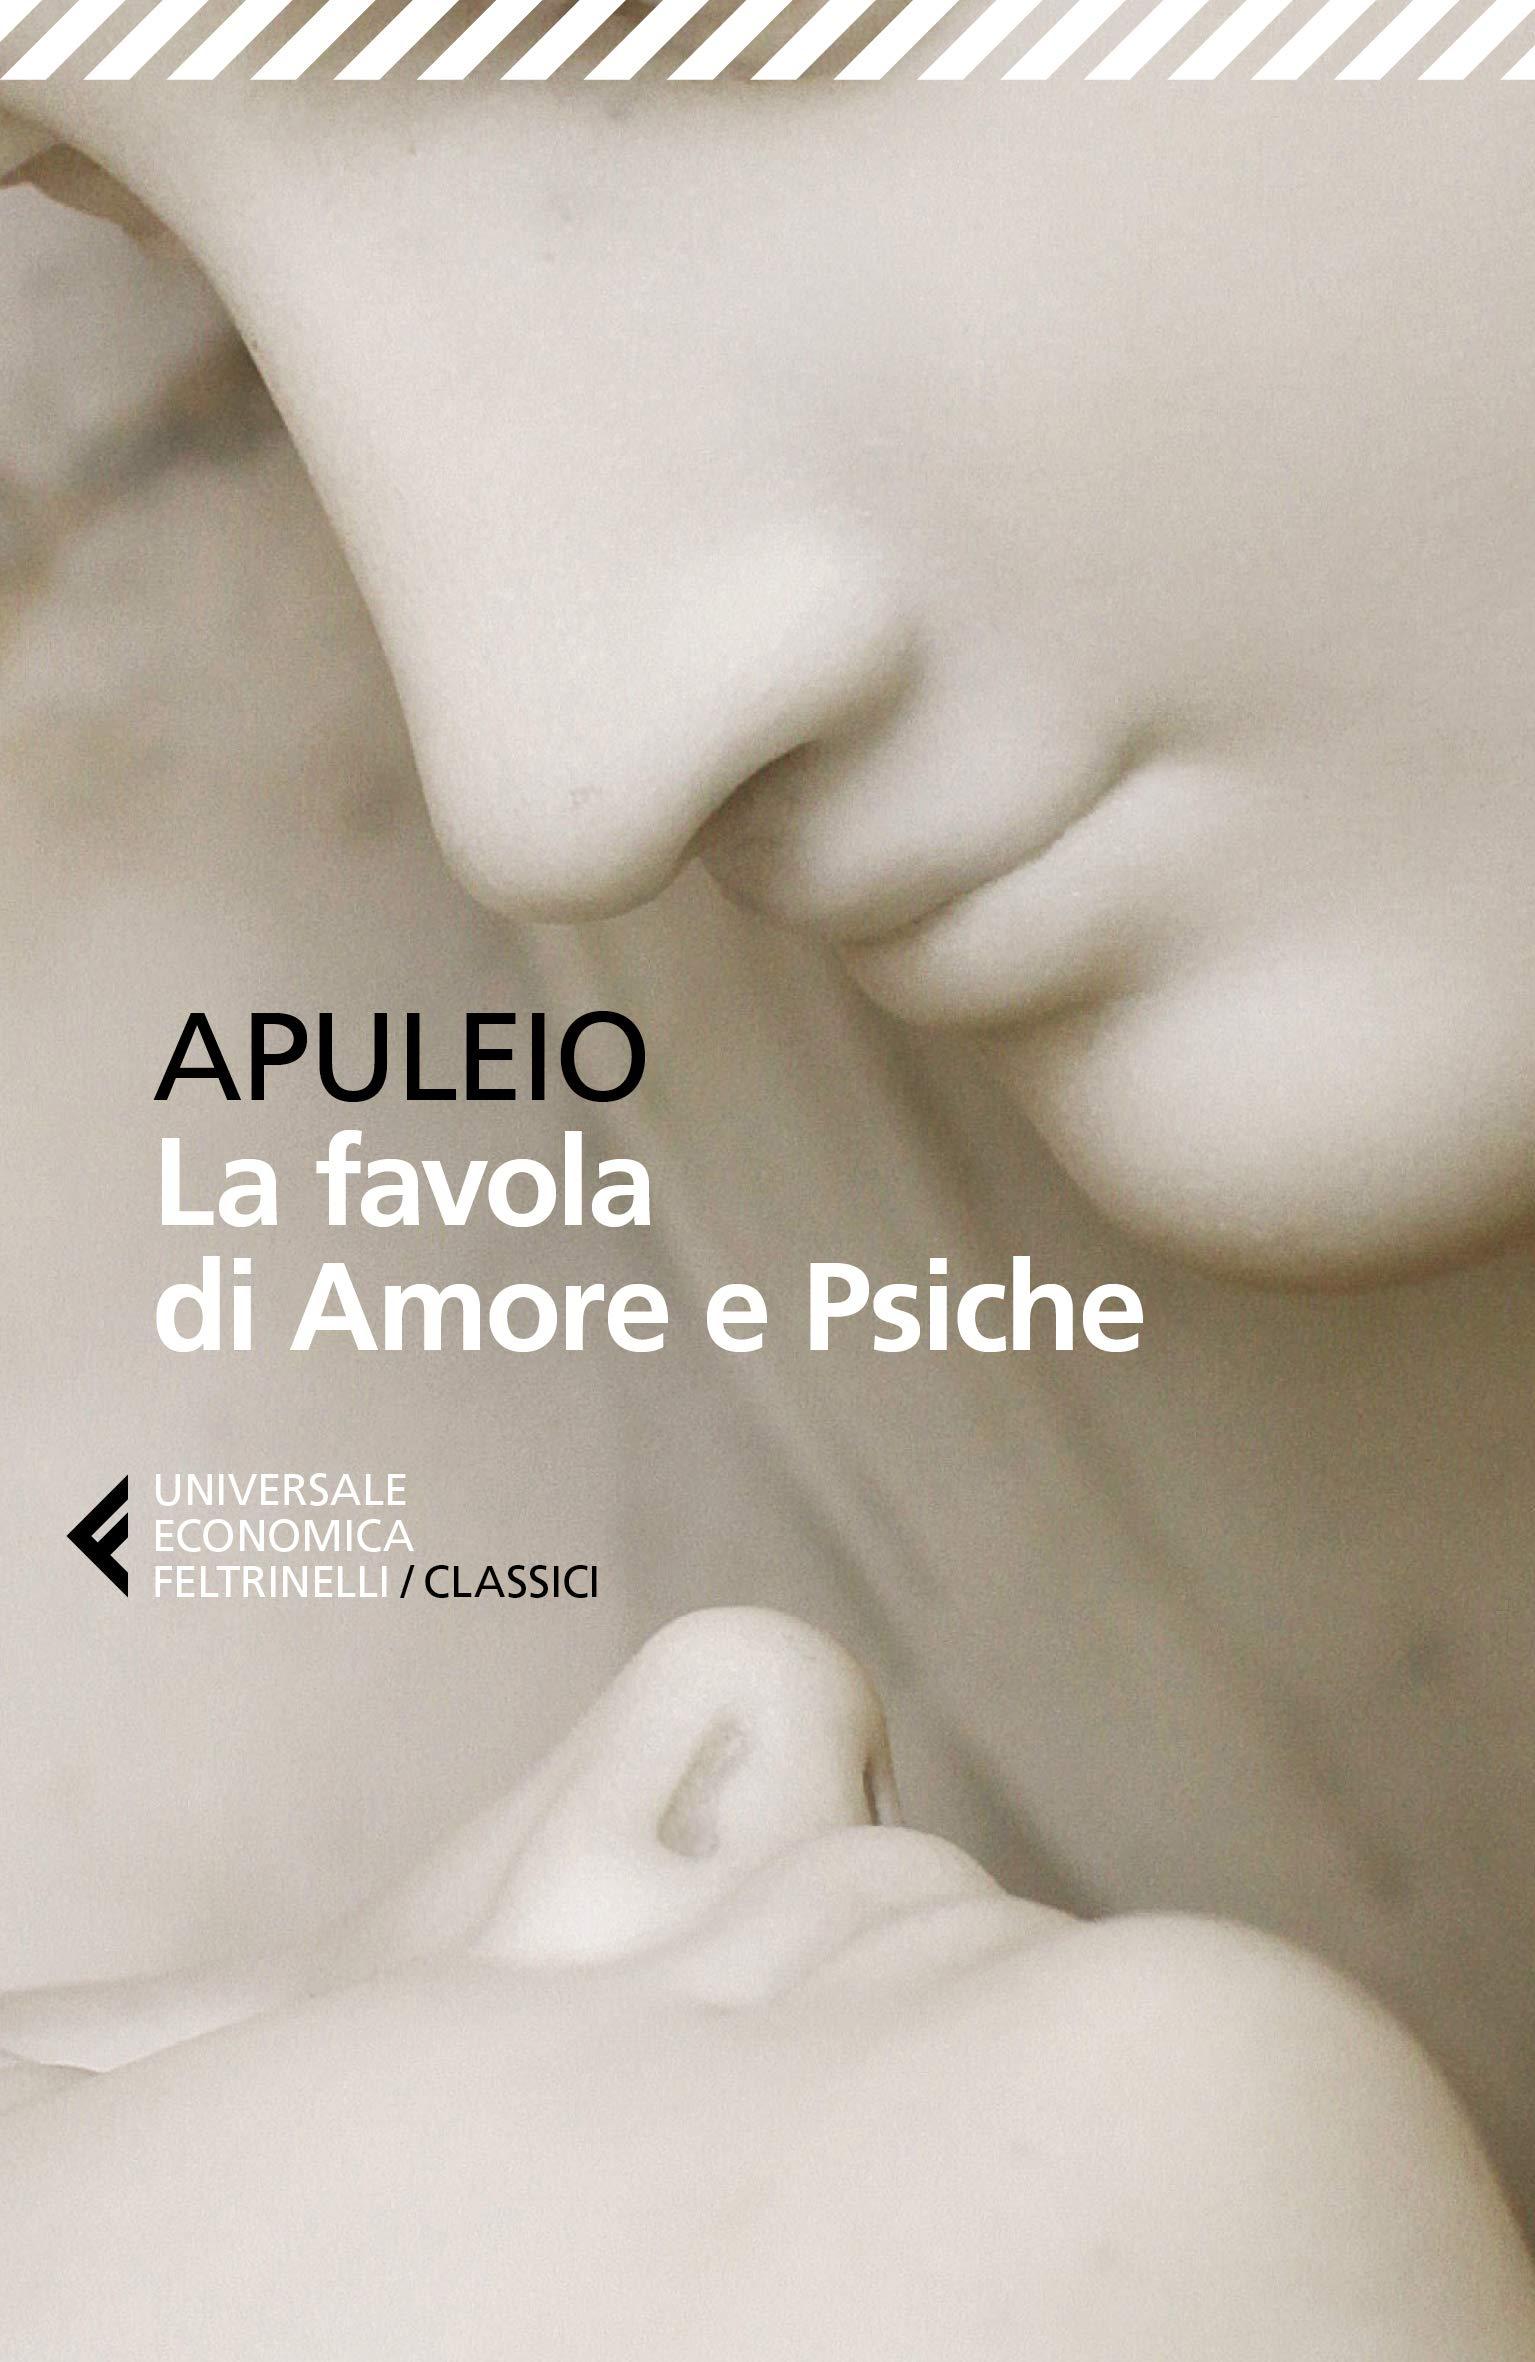 Libro "La favola di Amore e Psiche" di Apuleio